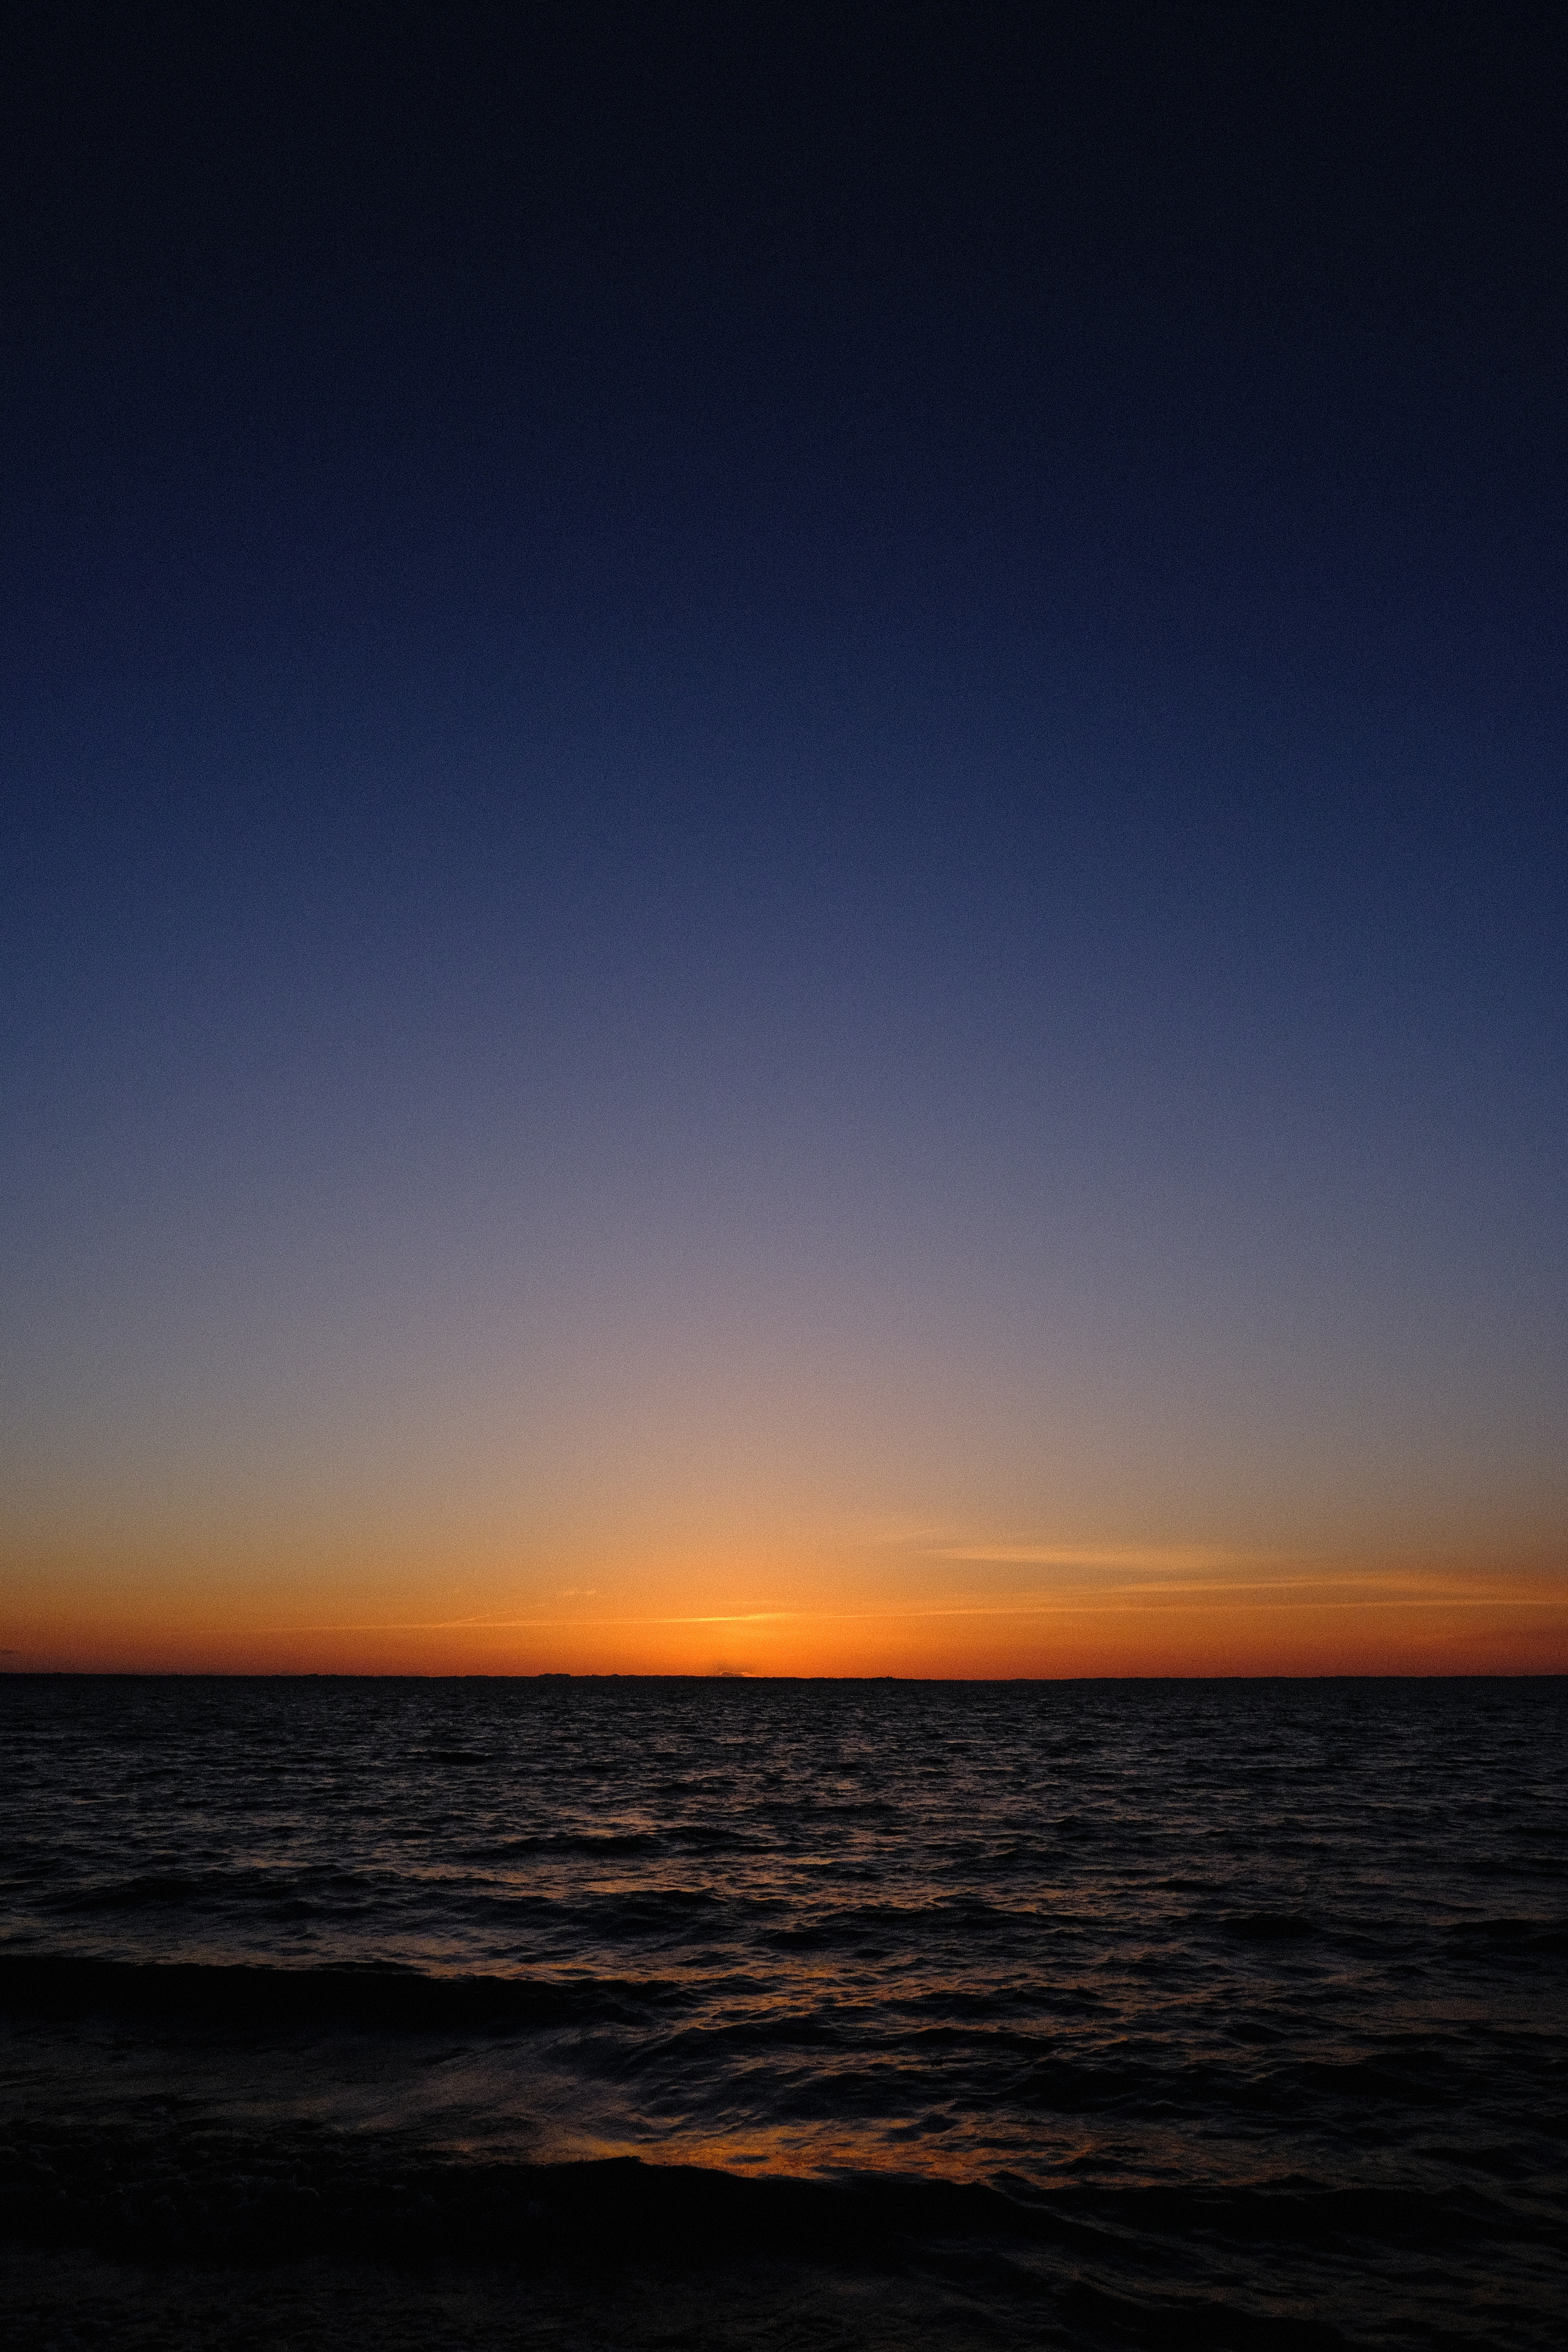 Download background night, nature, sunset, sky, sea, horizon, dark